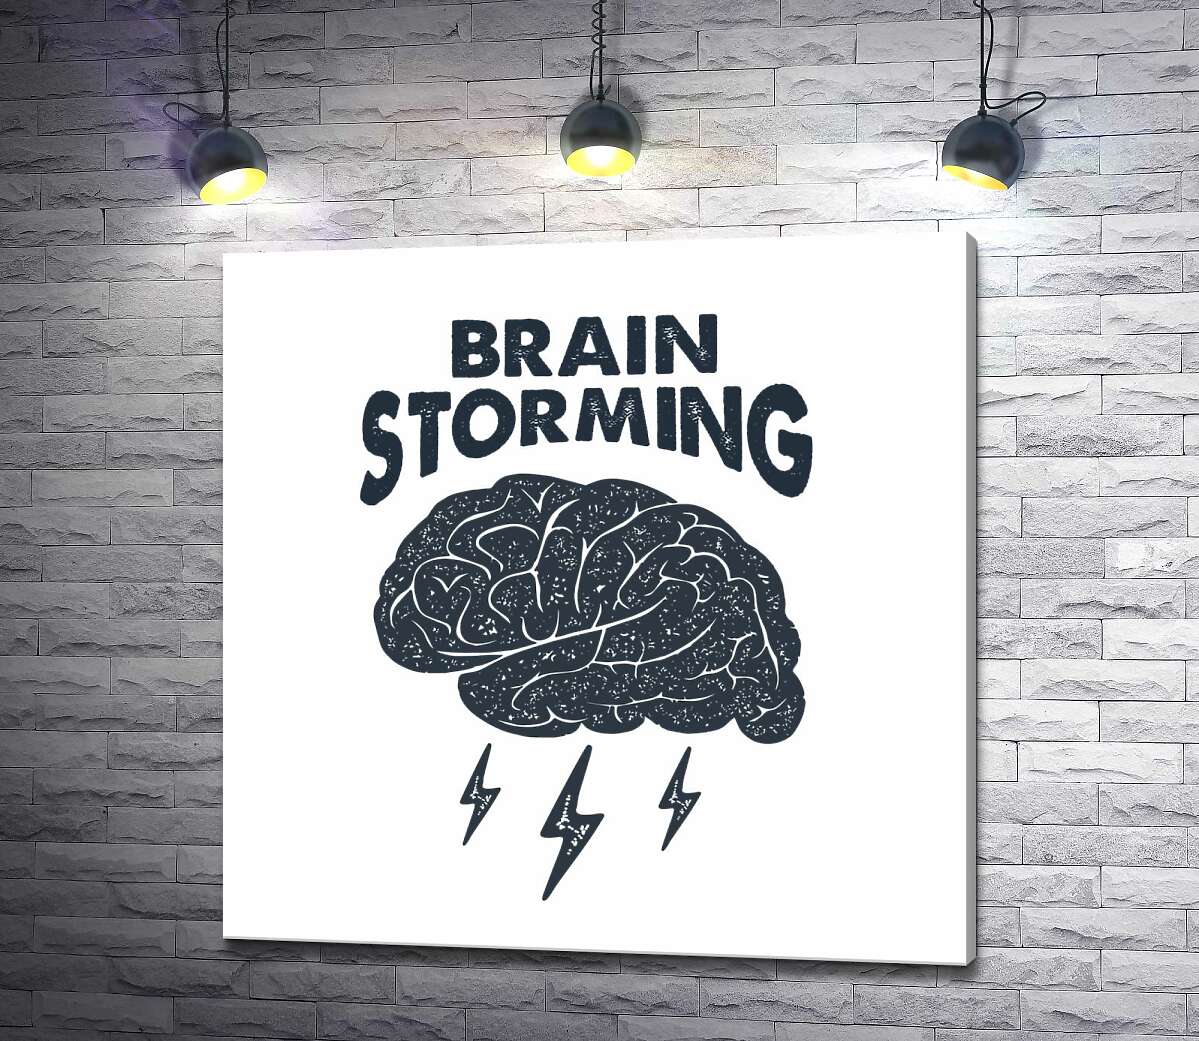 картина Мозг издает молниеносные идеи наряду с фразой "brain storming"